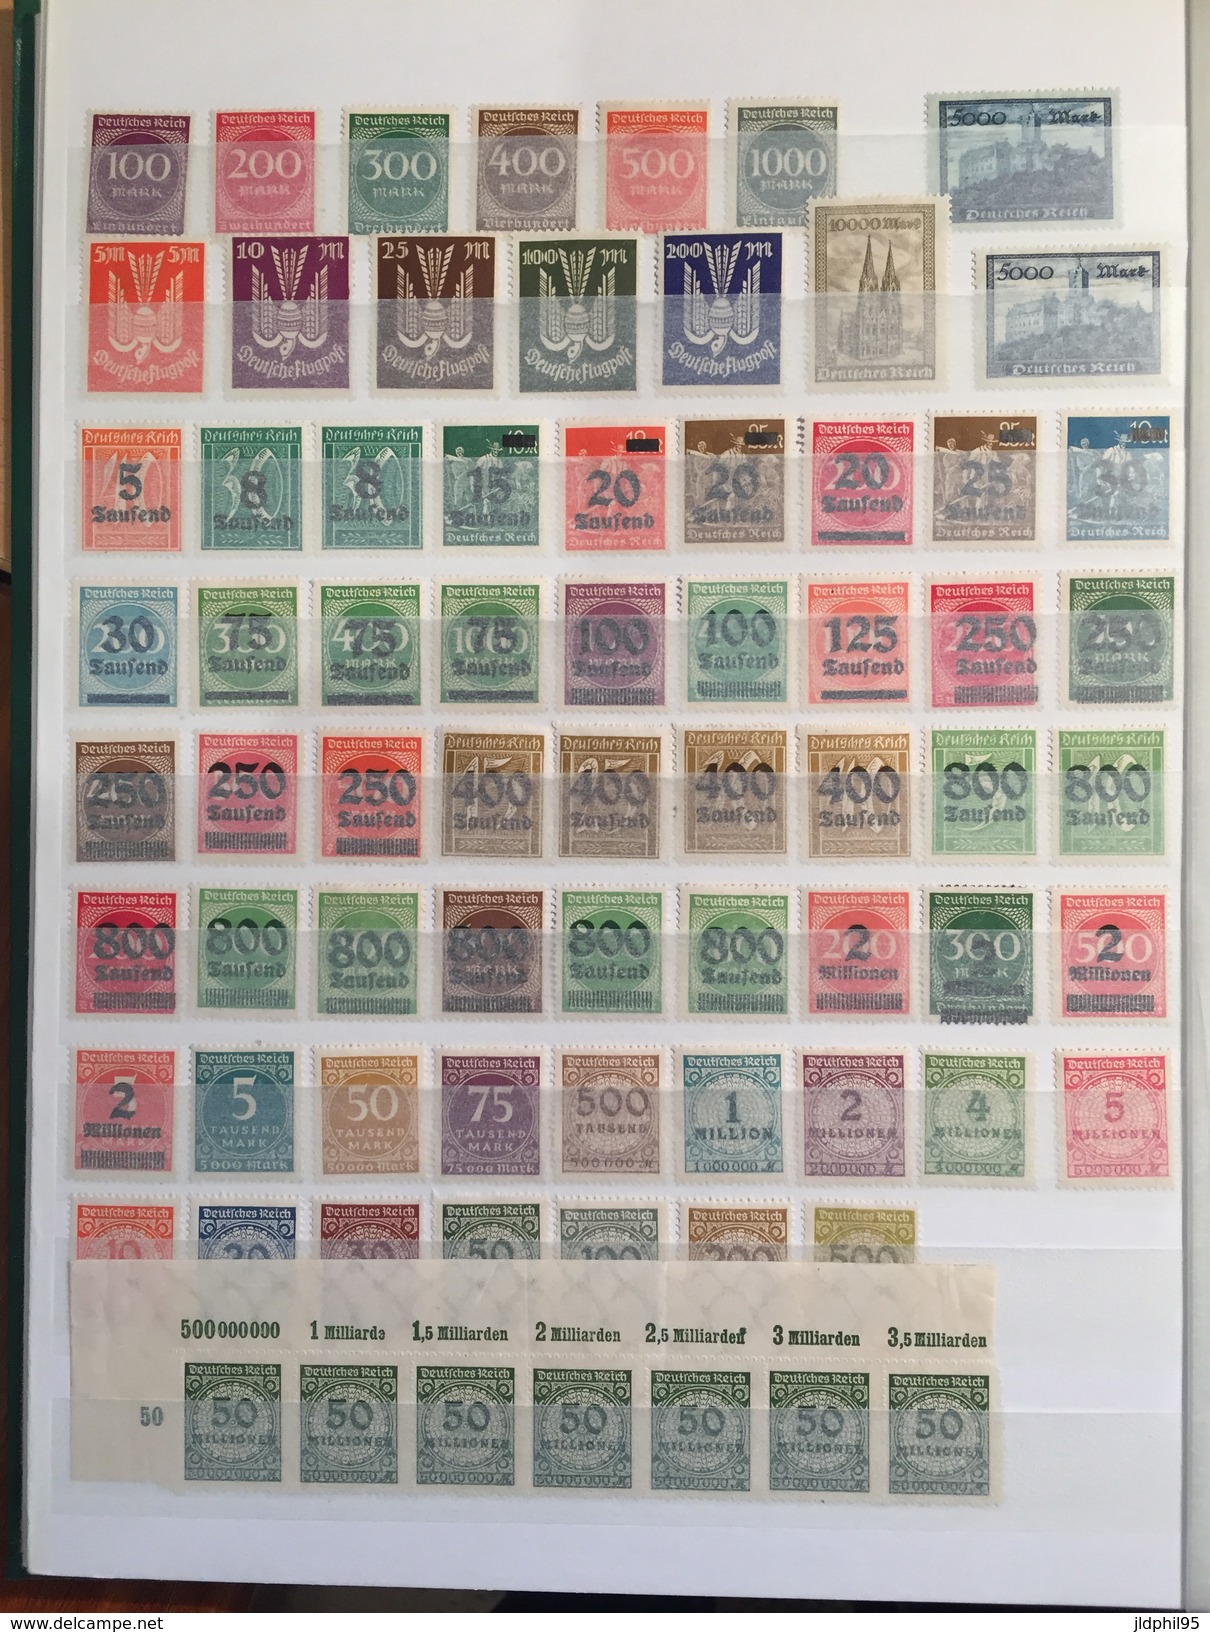 LOTS  - Albanie _  Allemagne -  + de 700 timbres, neuf ou oblitérés